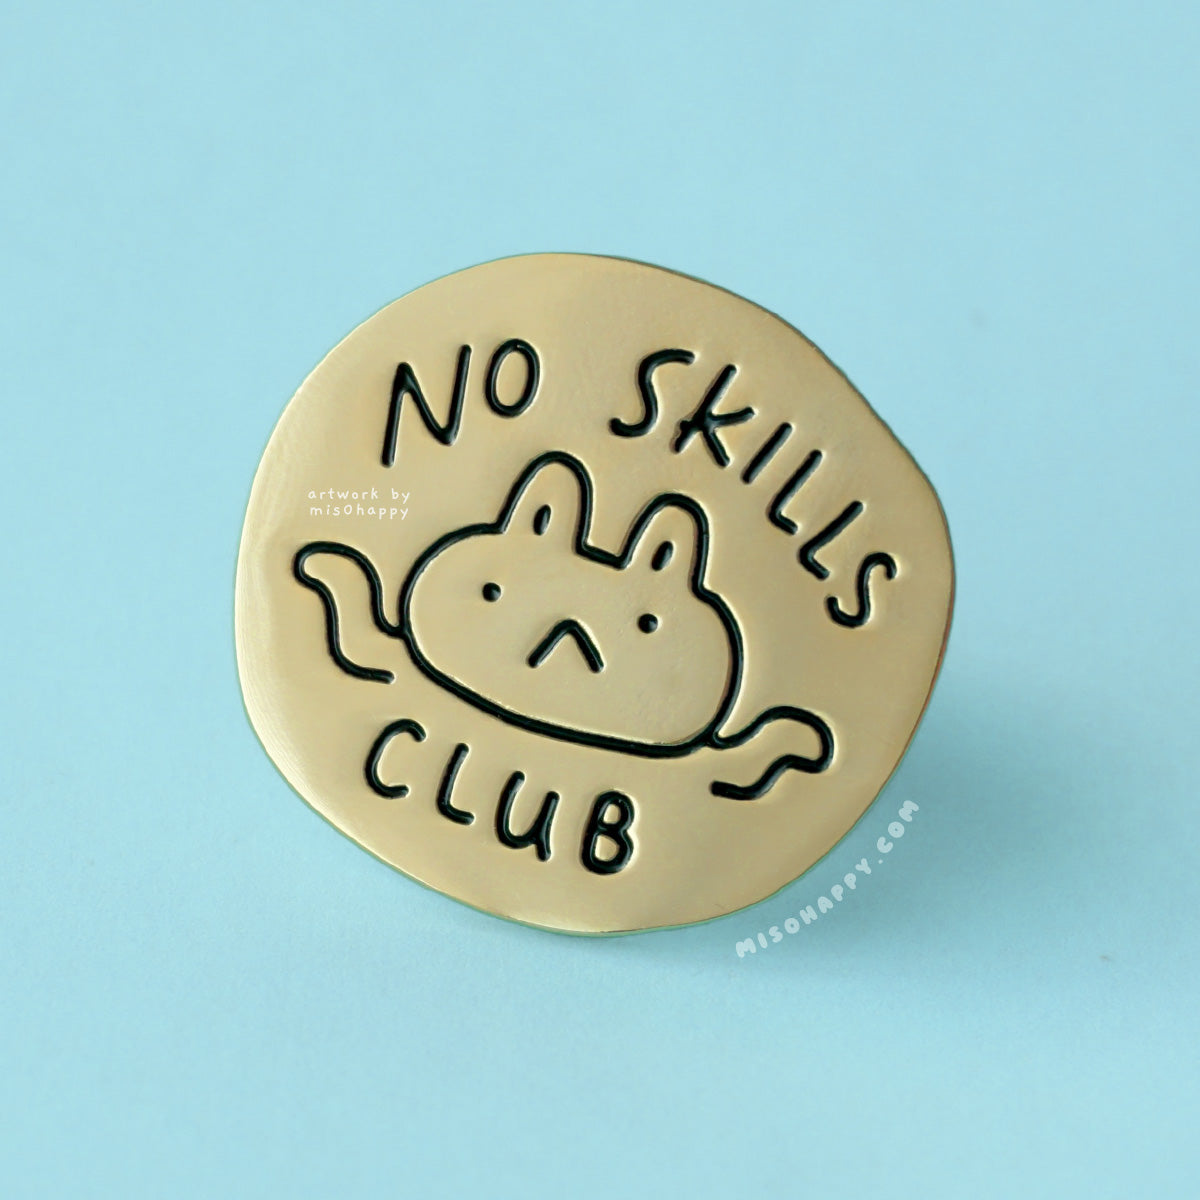 "No Skills Club" Enamel Pin